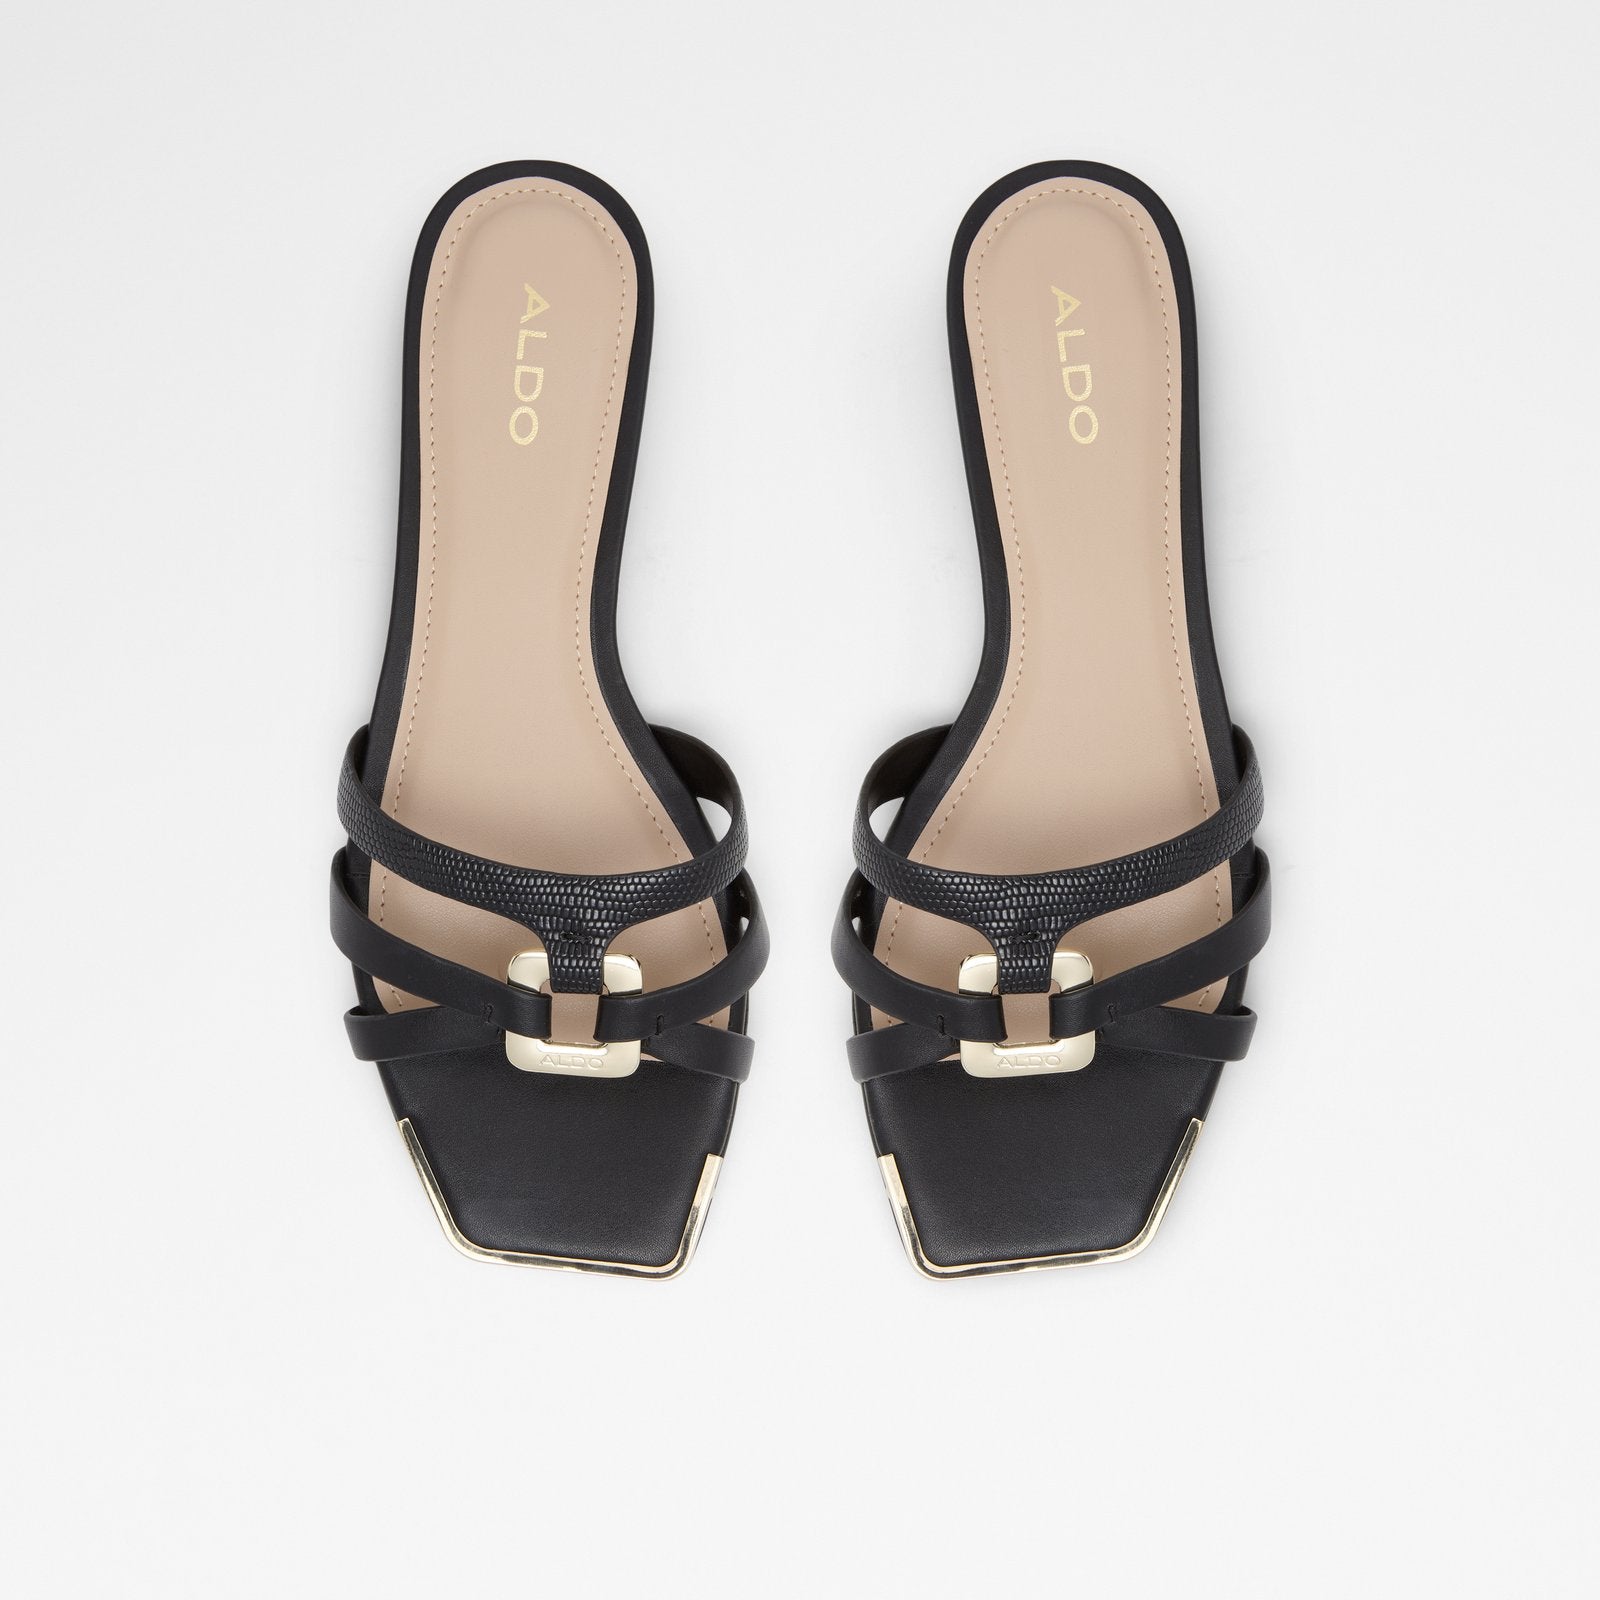 Kedauwen Women Shoes - Black - ALDO KSA